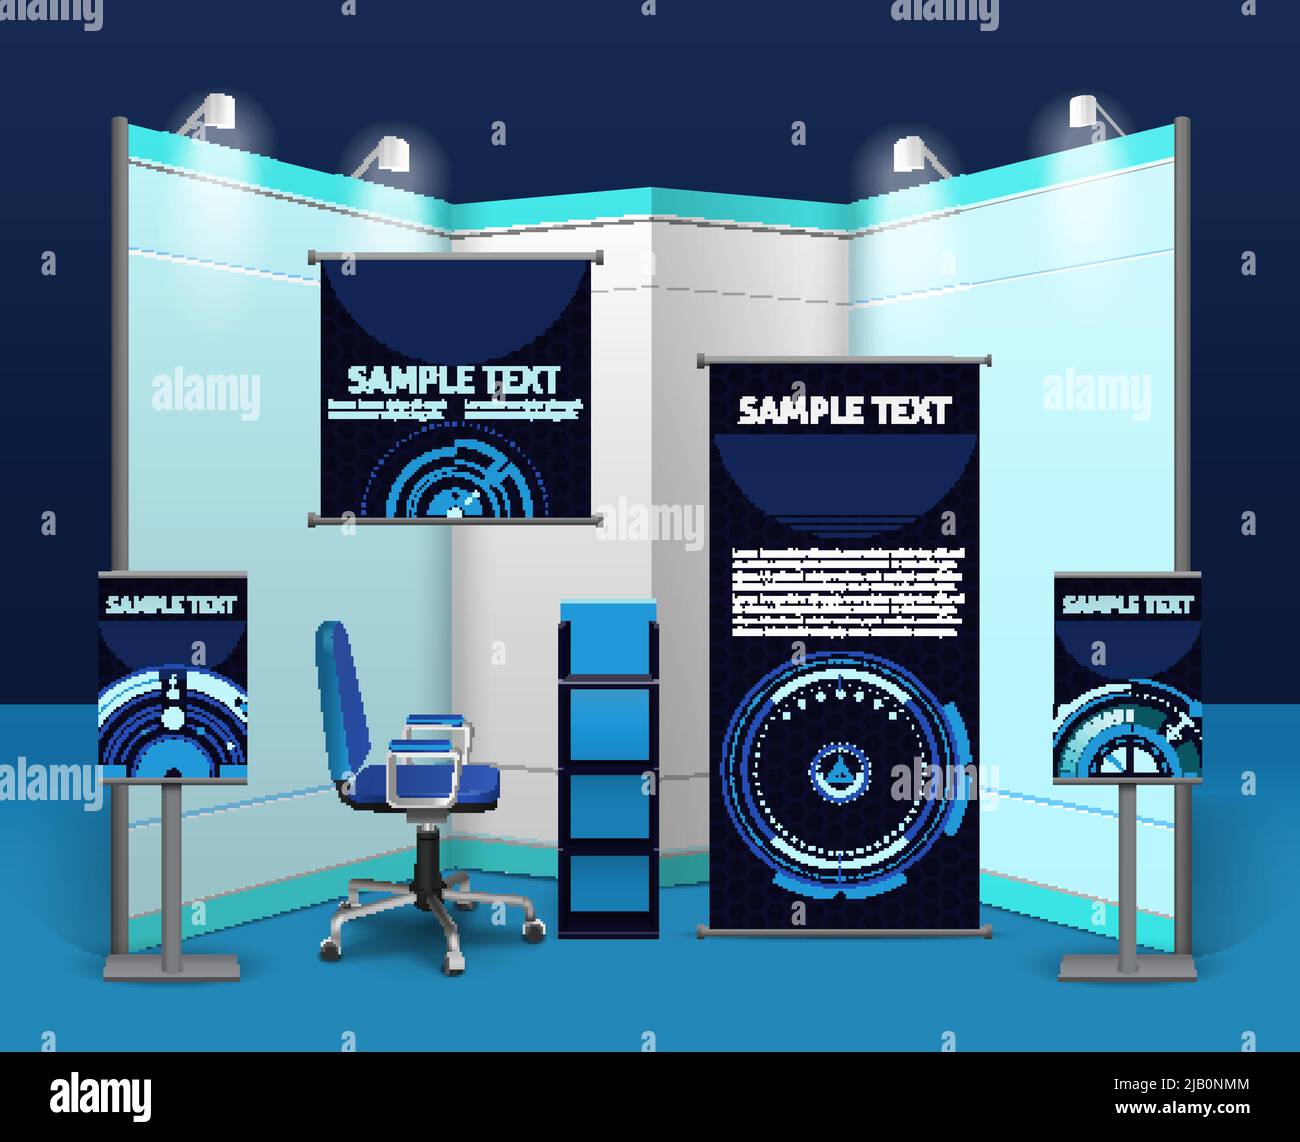 Modello di stand promozionale con oggetti pubblicitari ed elementi in stile aziendale blu illustrazione vettoriale isolata Illustrazione Vettoriale